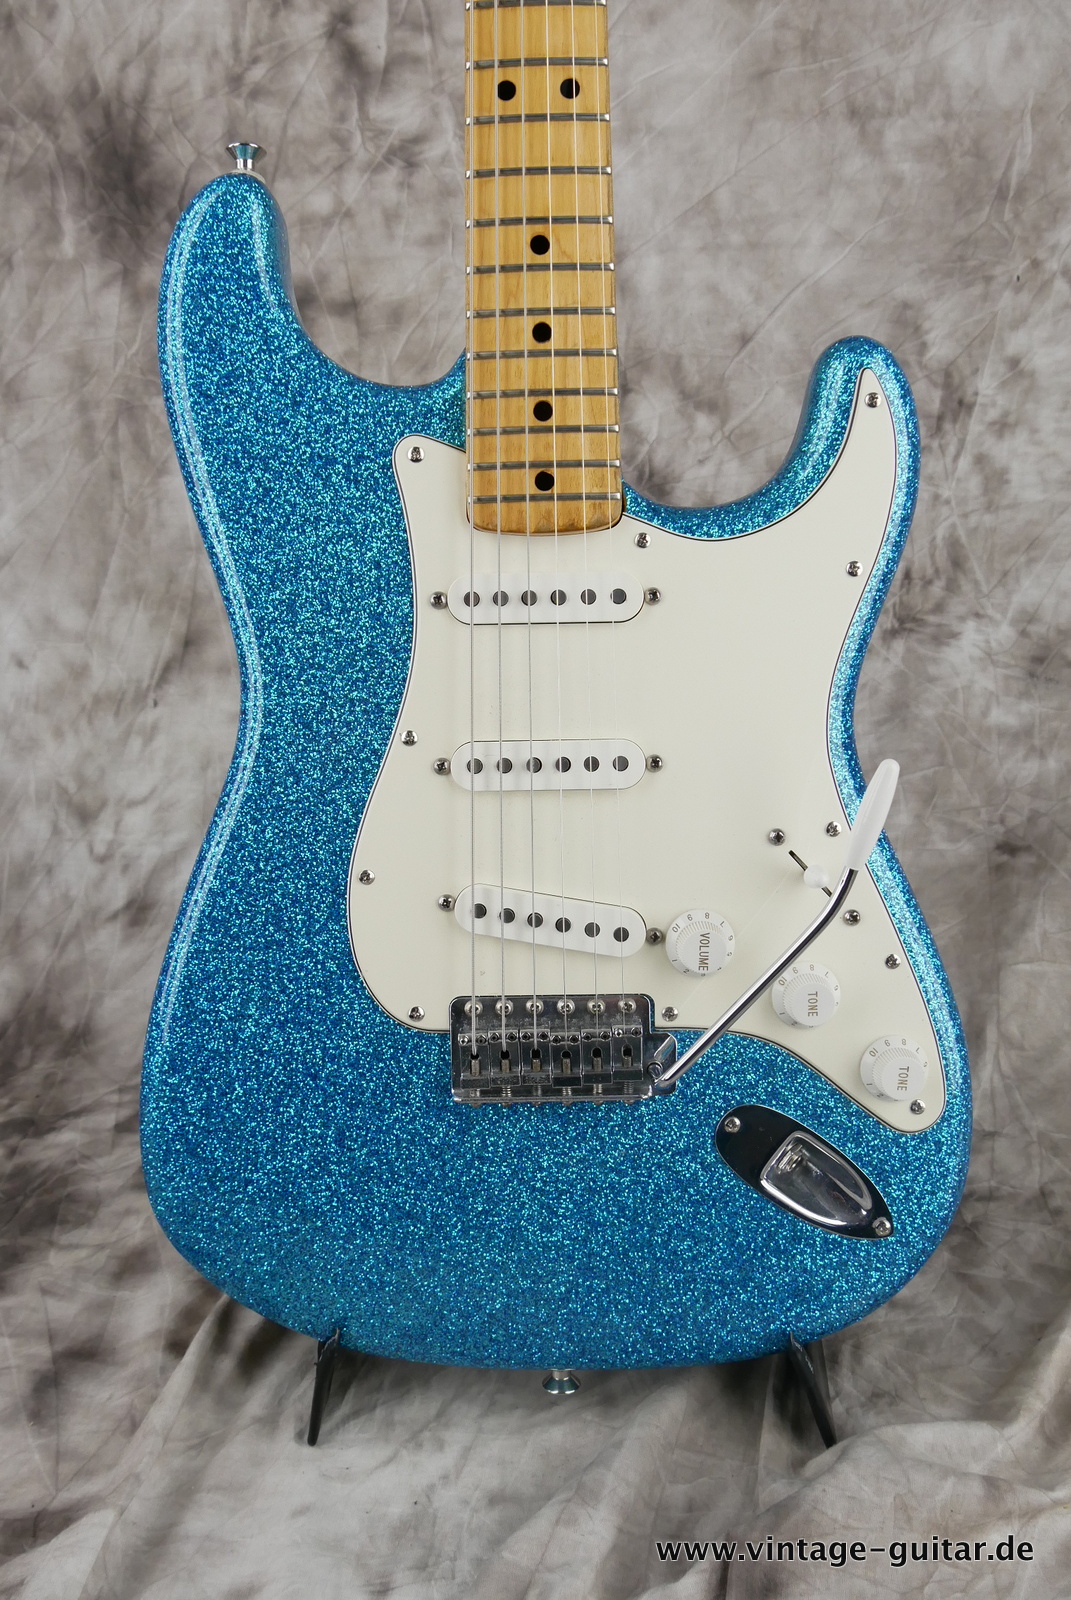 Fender-Stratocaster-1974c-blue-sparkle-003.JPG